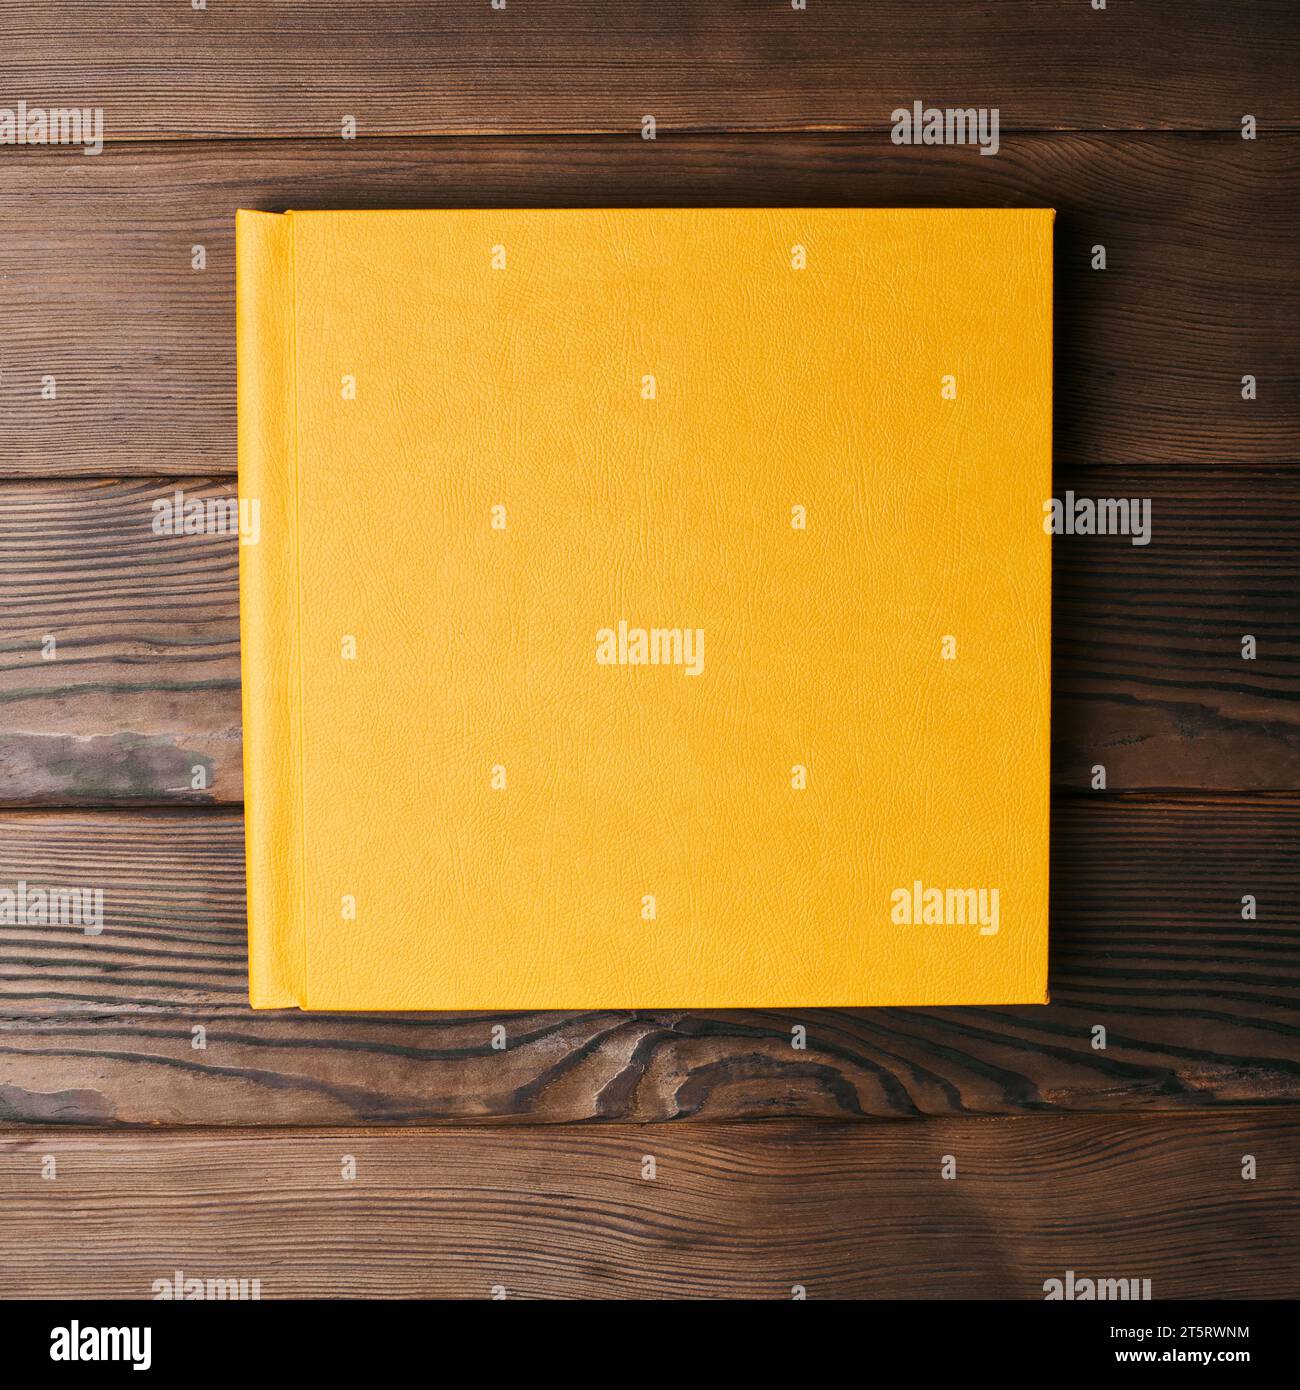 Livre photo relié en cuir jaune isolé sur un fond en bois avec espace de copie. Vue de dessus, pose à plat. Сlosed maquette de reliure de livre pour ajouter personnel Banque D'Images